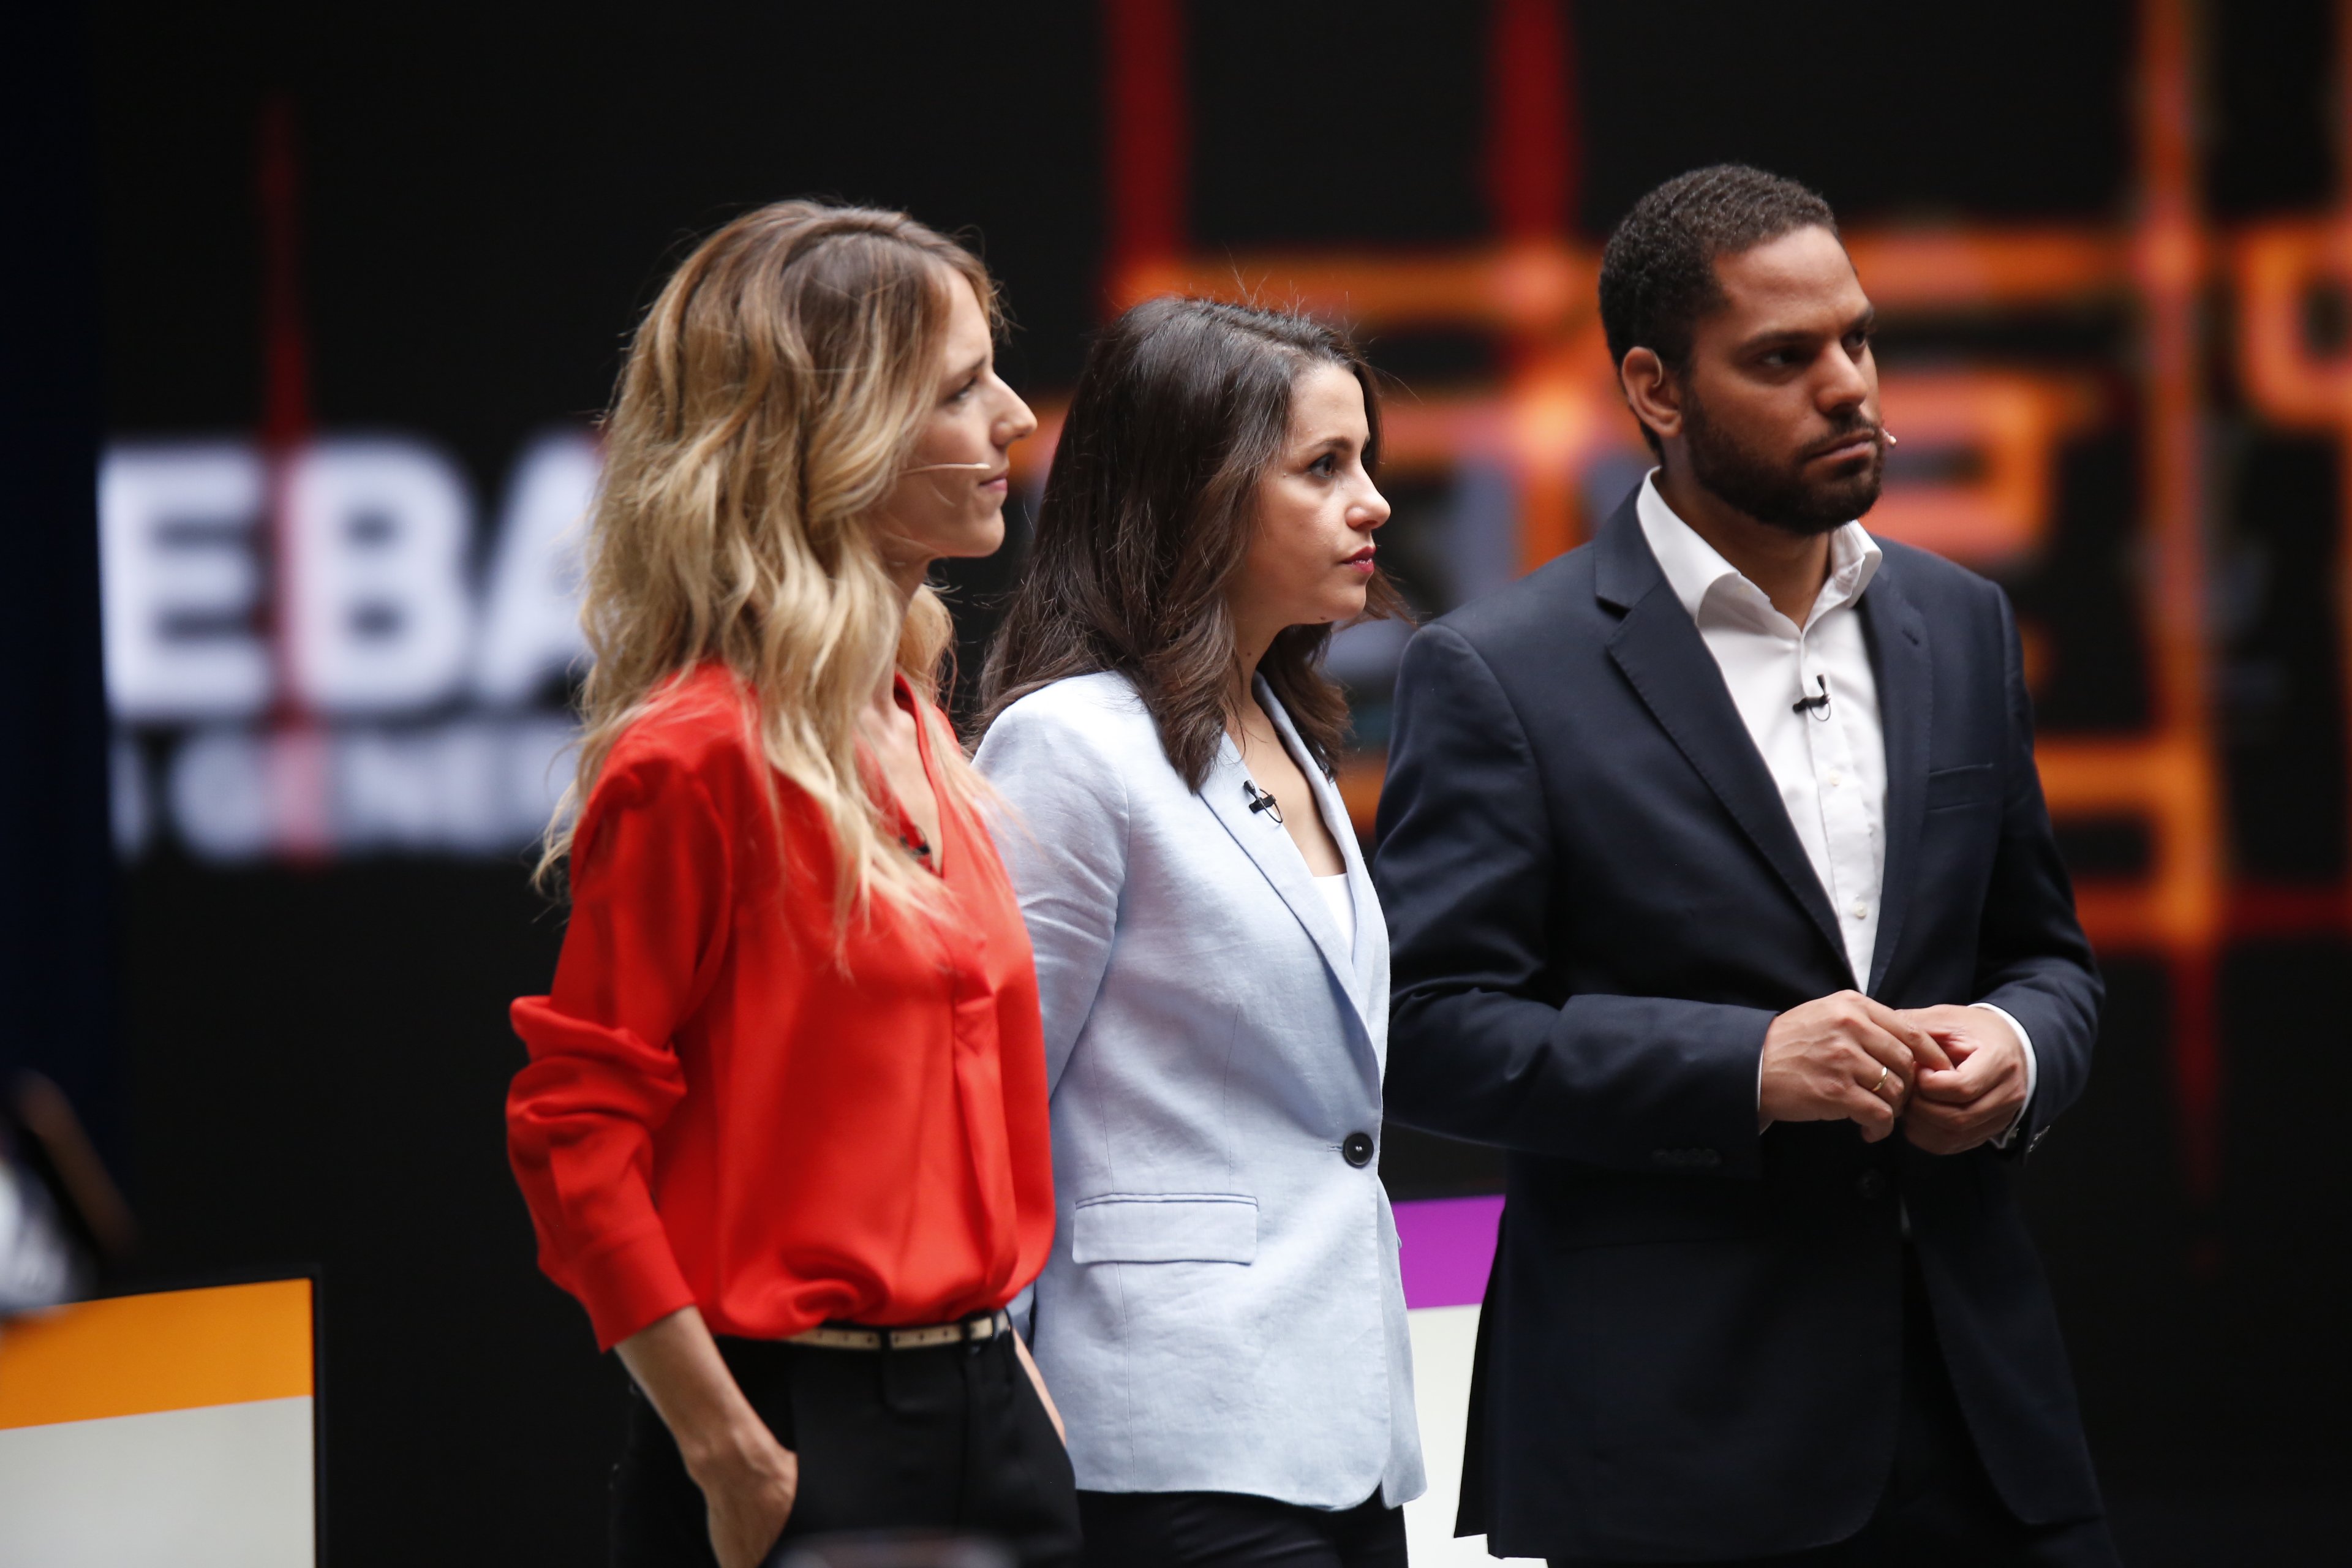 "¿Si me saludaron?": El director de TV3 revela el postdebate con Arrimadas y Cayetana